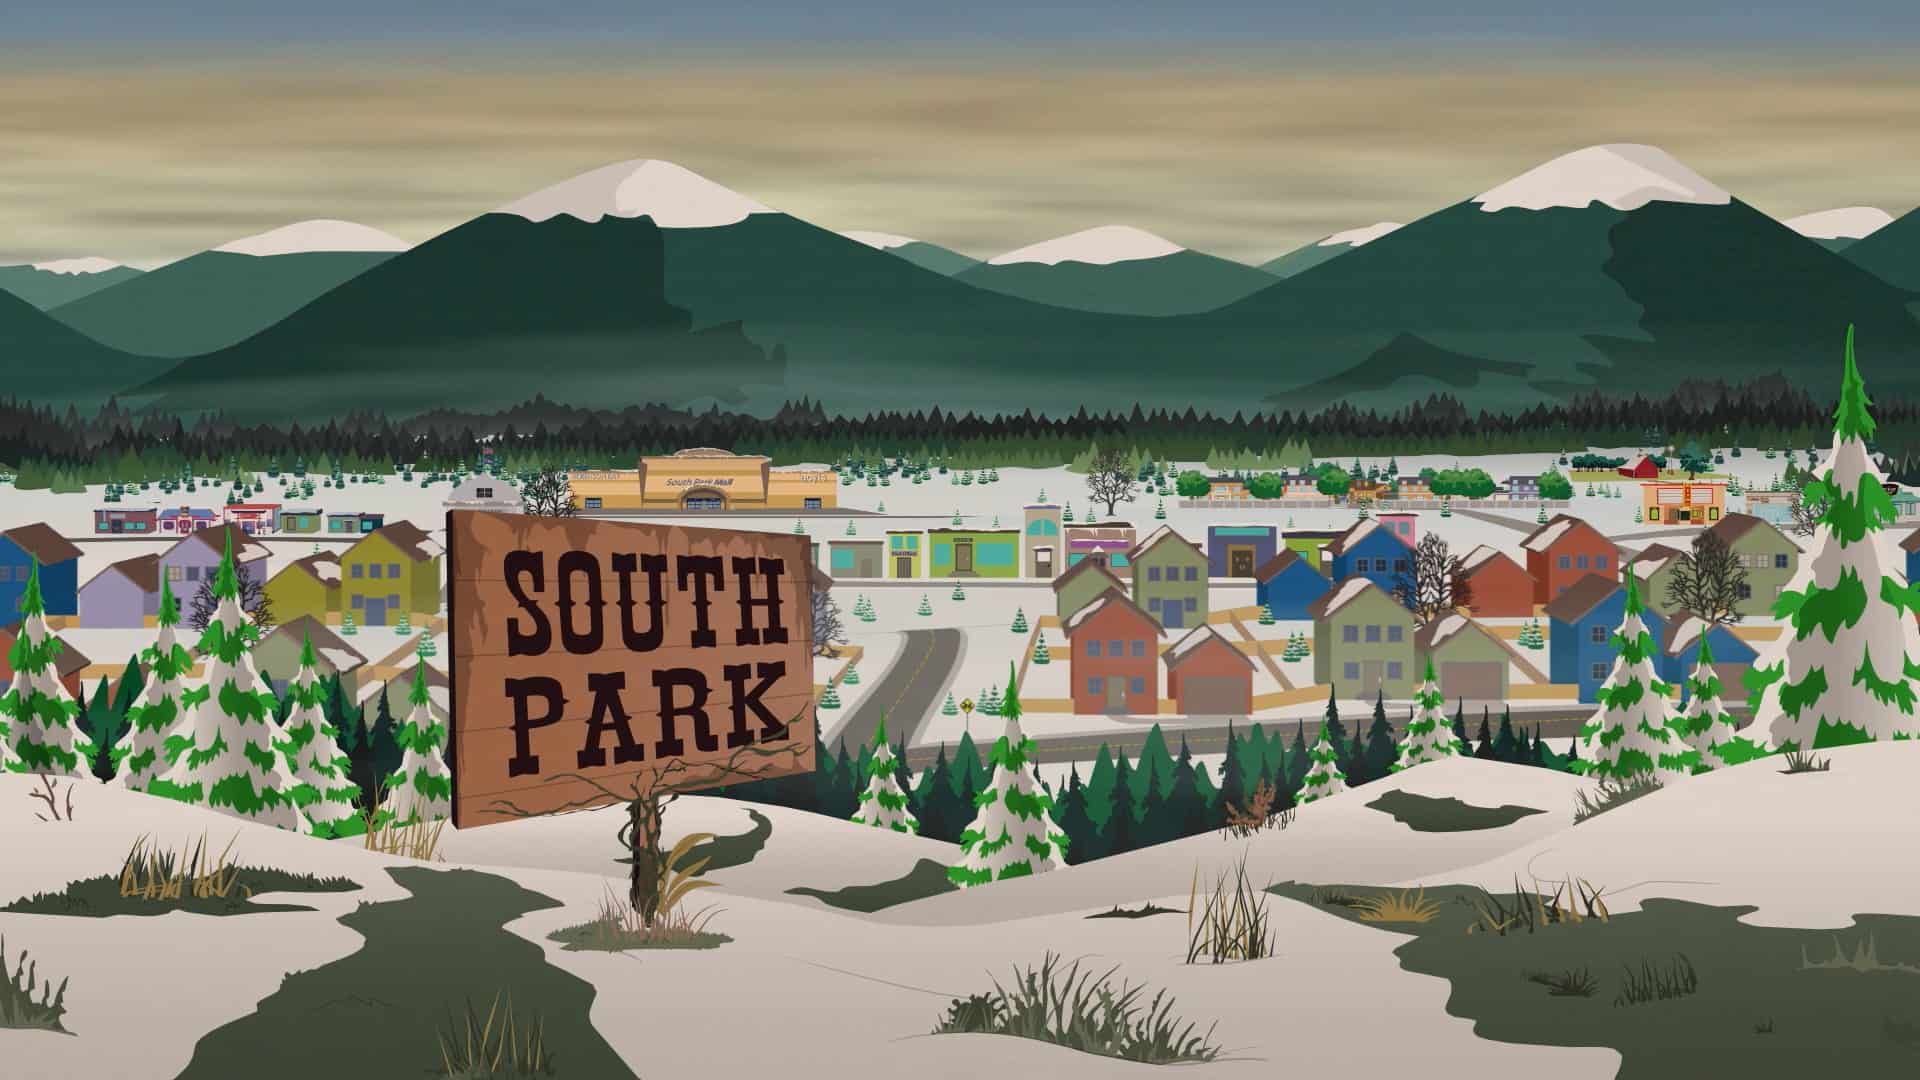 South Park Season 24 Blu-ray title